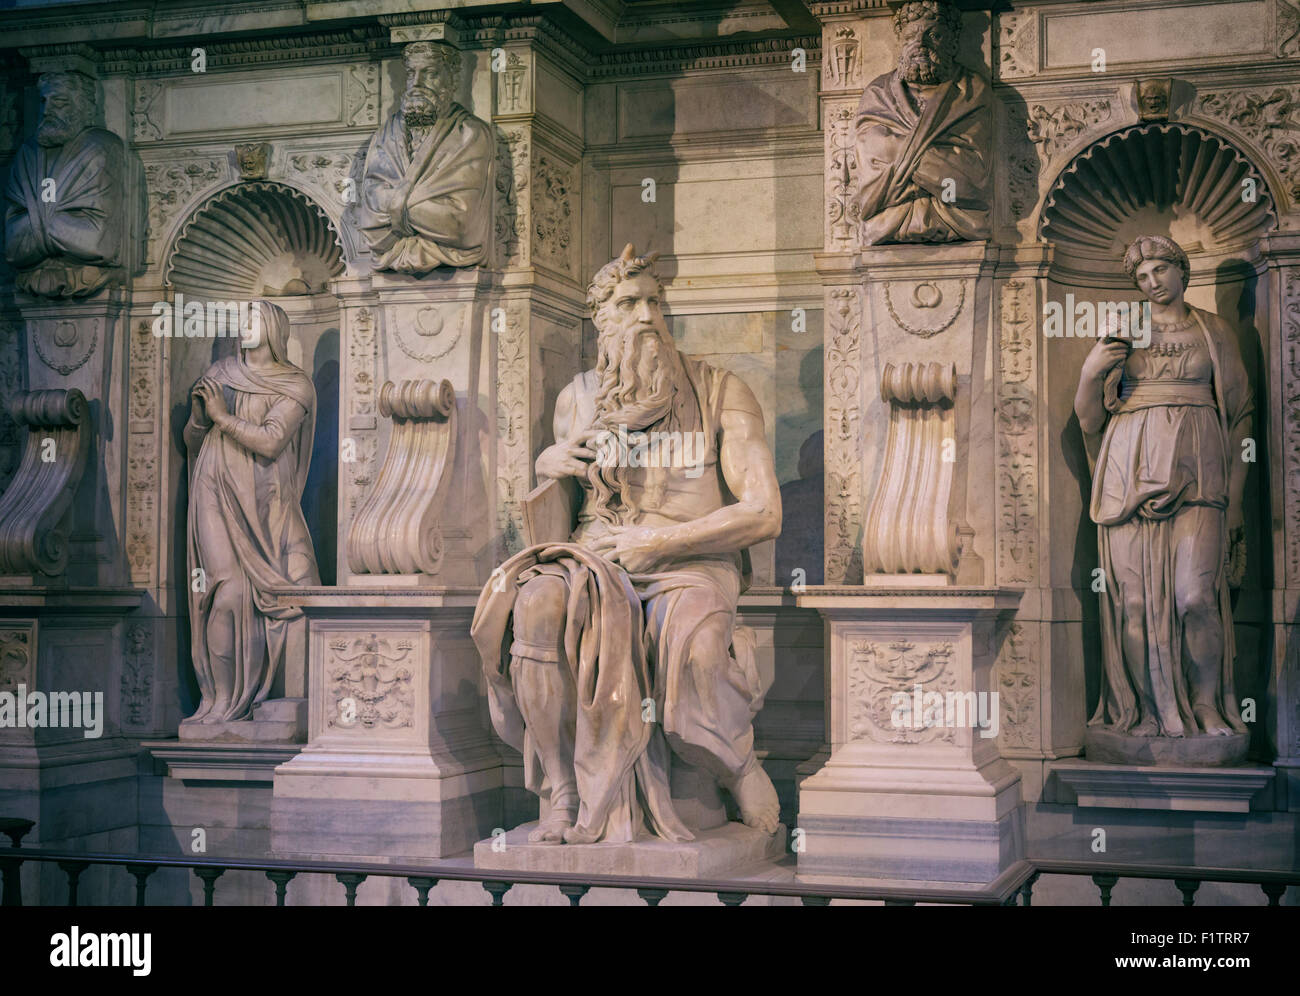 Roma, Italia. San Pietro in Vincoli. La scultura in marmo di Mosè sulla tomba di papa Giulio II creata da Michelangelo Foto Stock